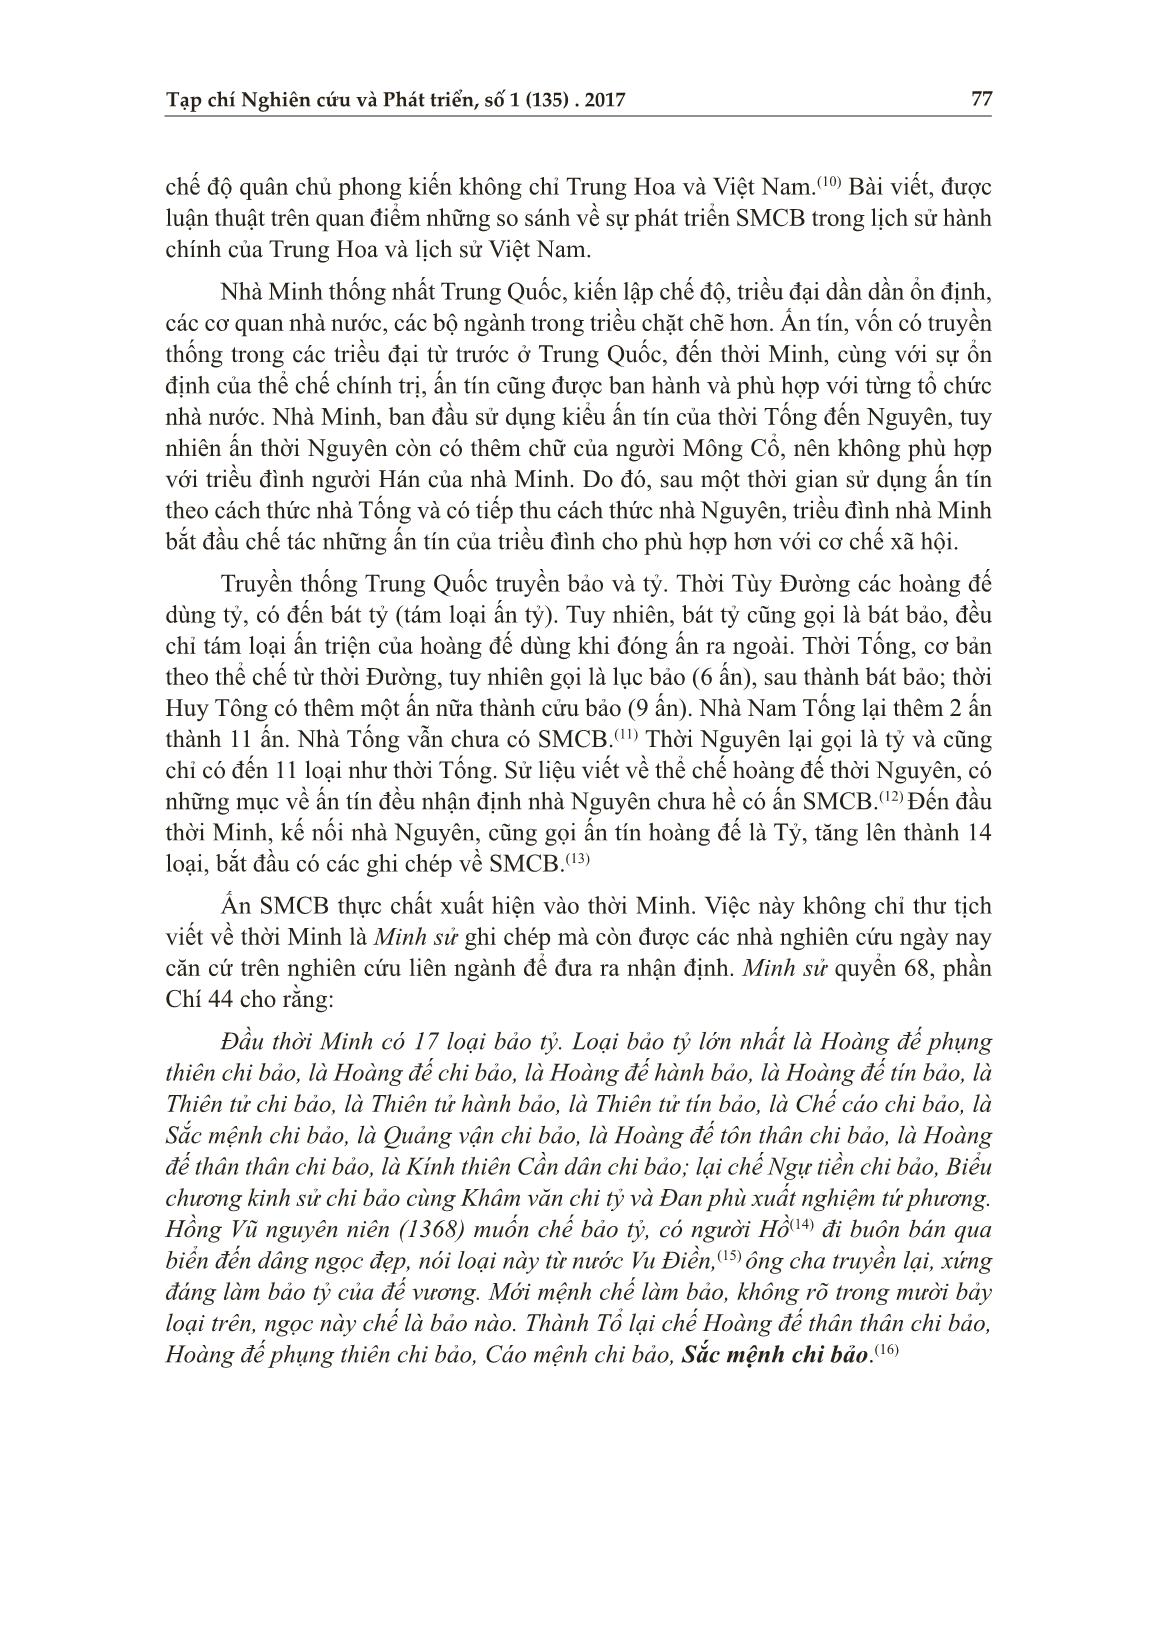 Ấn “sắc mệnh chi bảo” ở Hoàng thành Thăng Long và trào lưu phát ấn đương đại trang 4